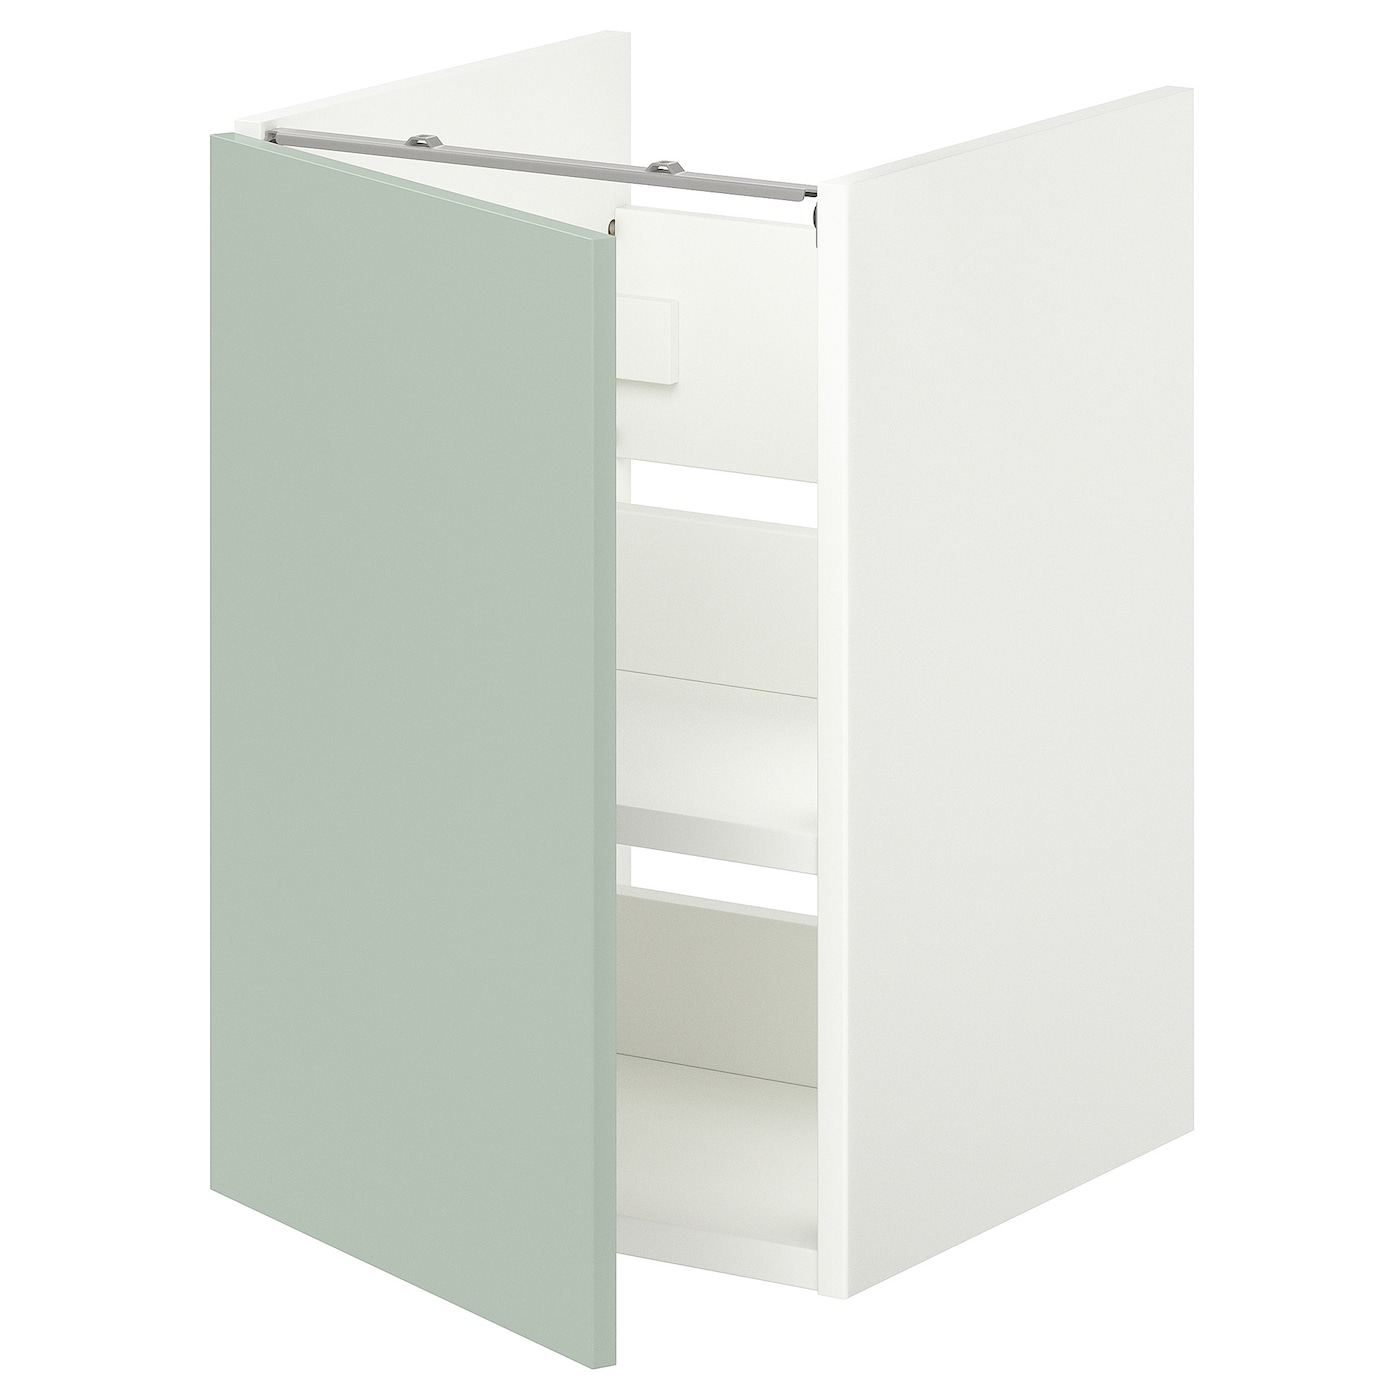 IKEA ENHET Sza umyw z pół/drz, biały/blady szaro-zielony, 40x42x60 cm